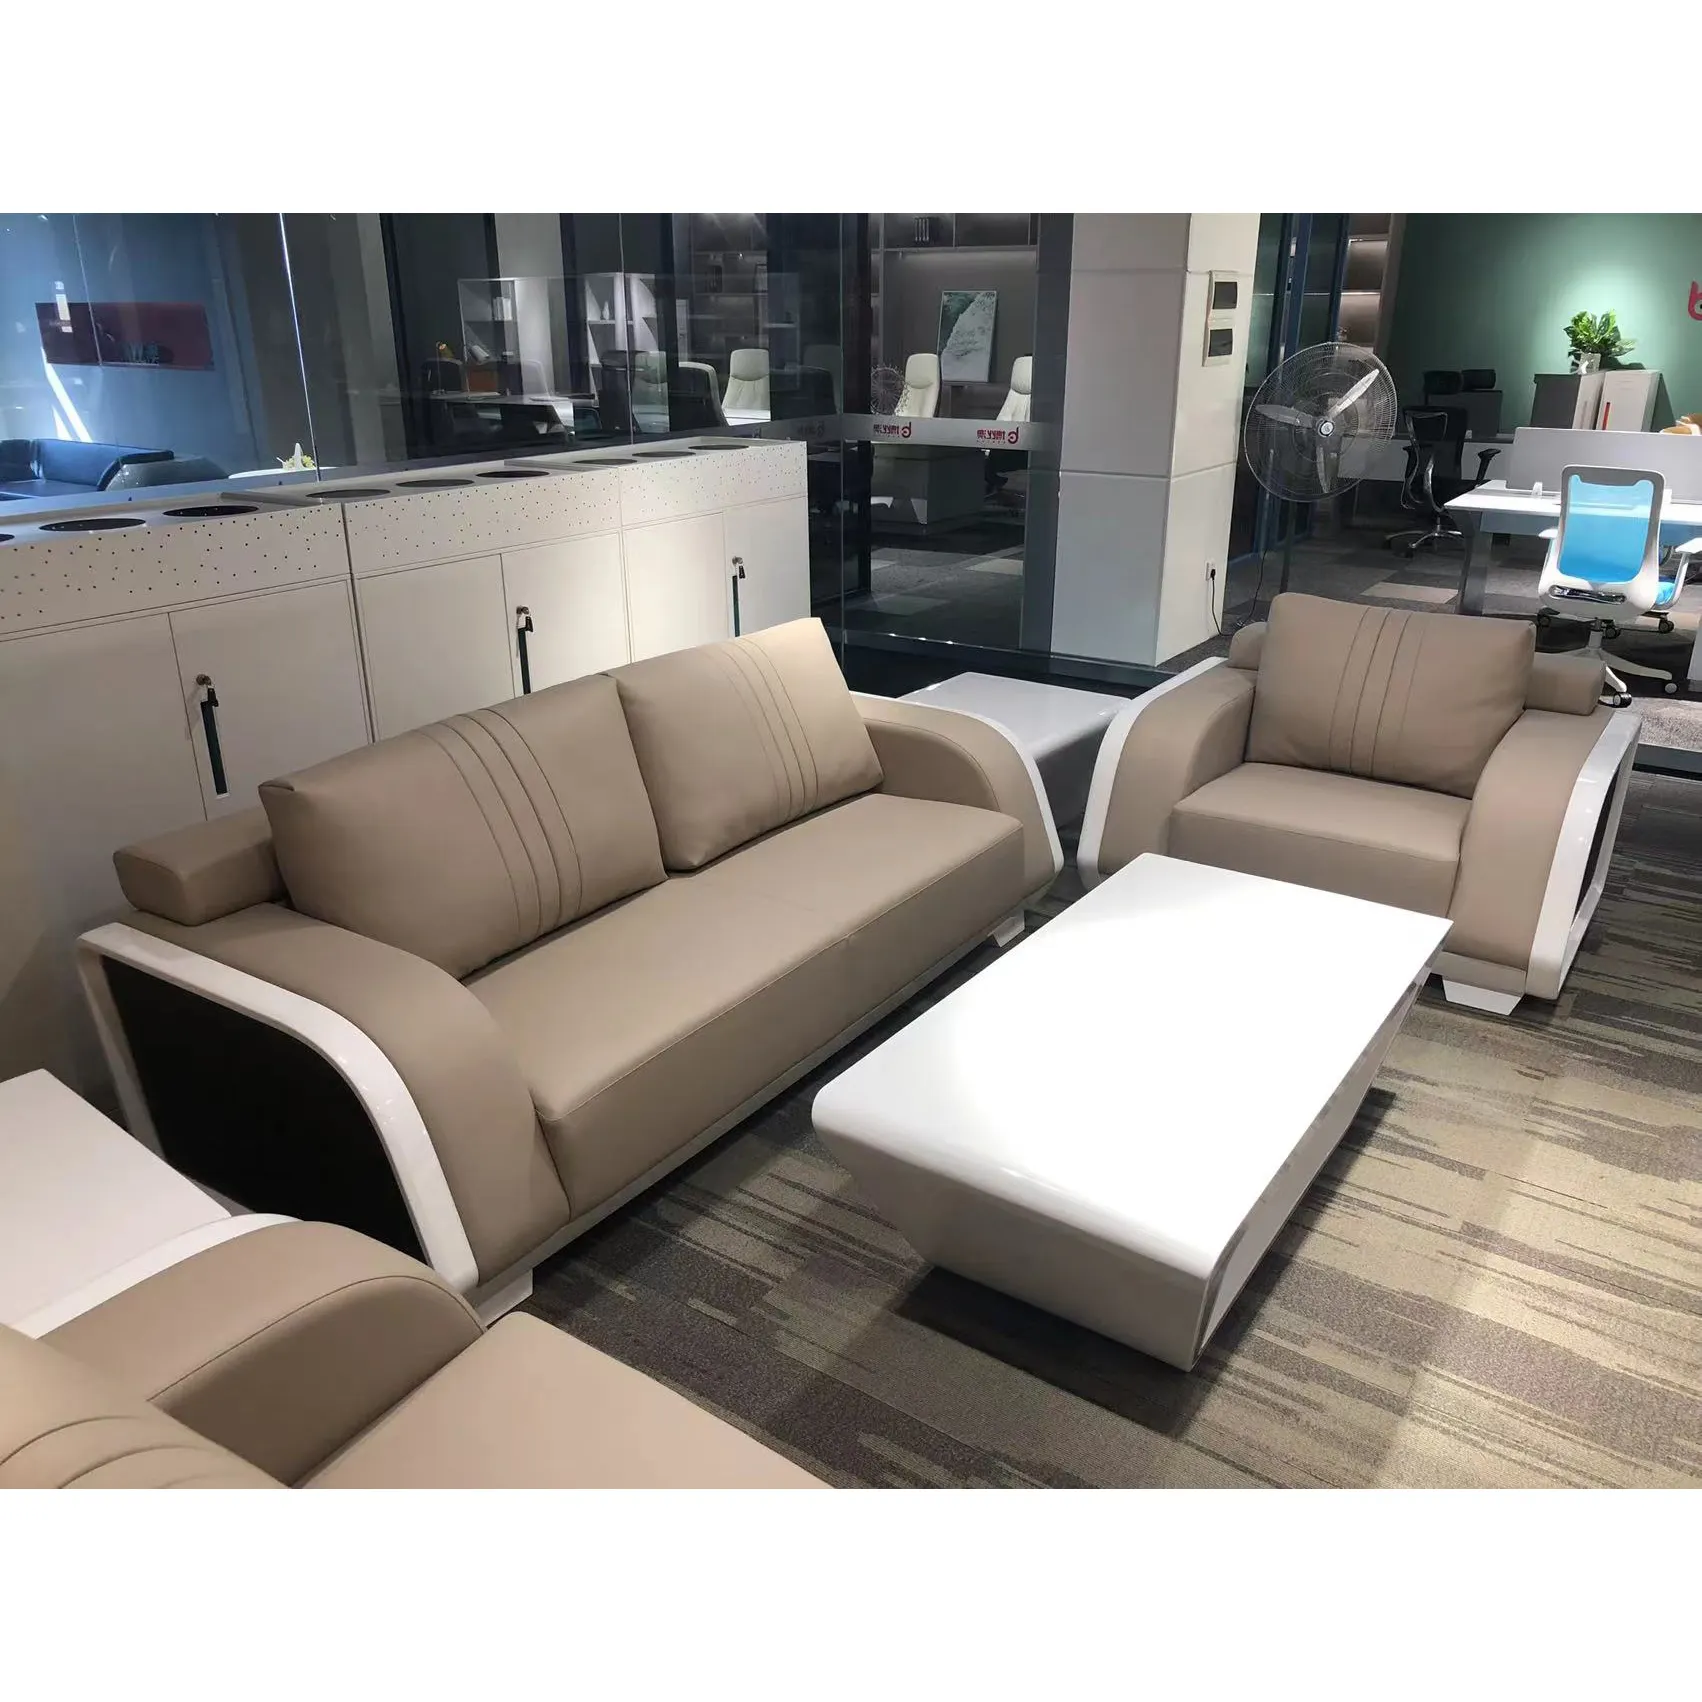 BOGAO Desain Produk Baru Nordik Minimalis Ruang Tamu Pu Kulit Furnitur Ruang Tamu Penutup Sofa 5 Orang Putih